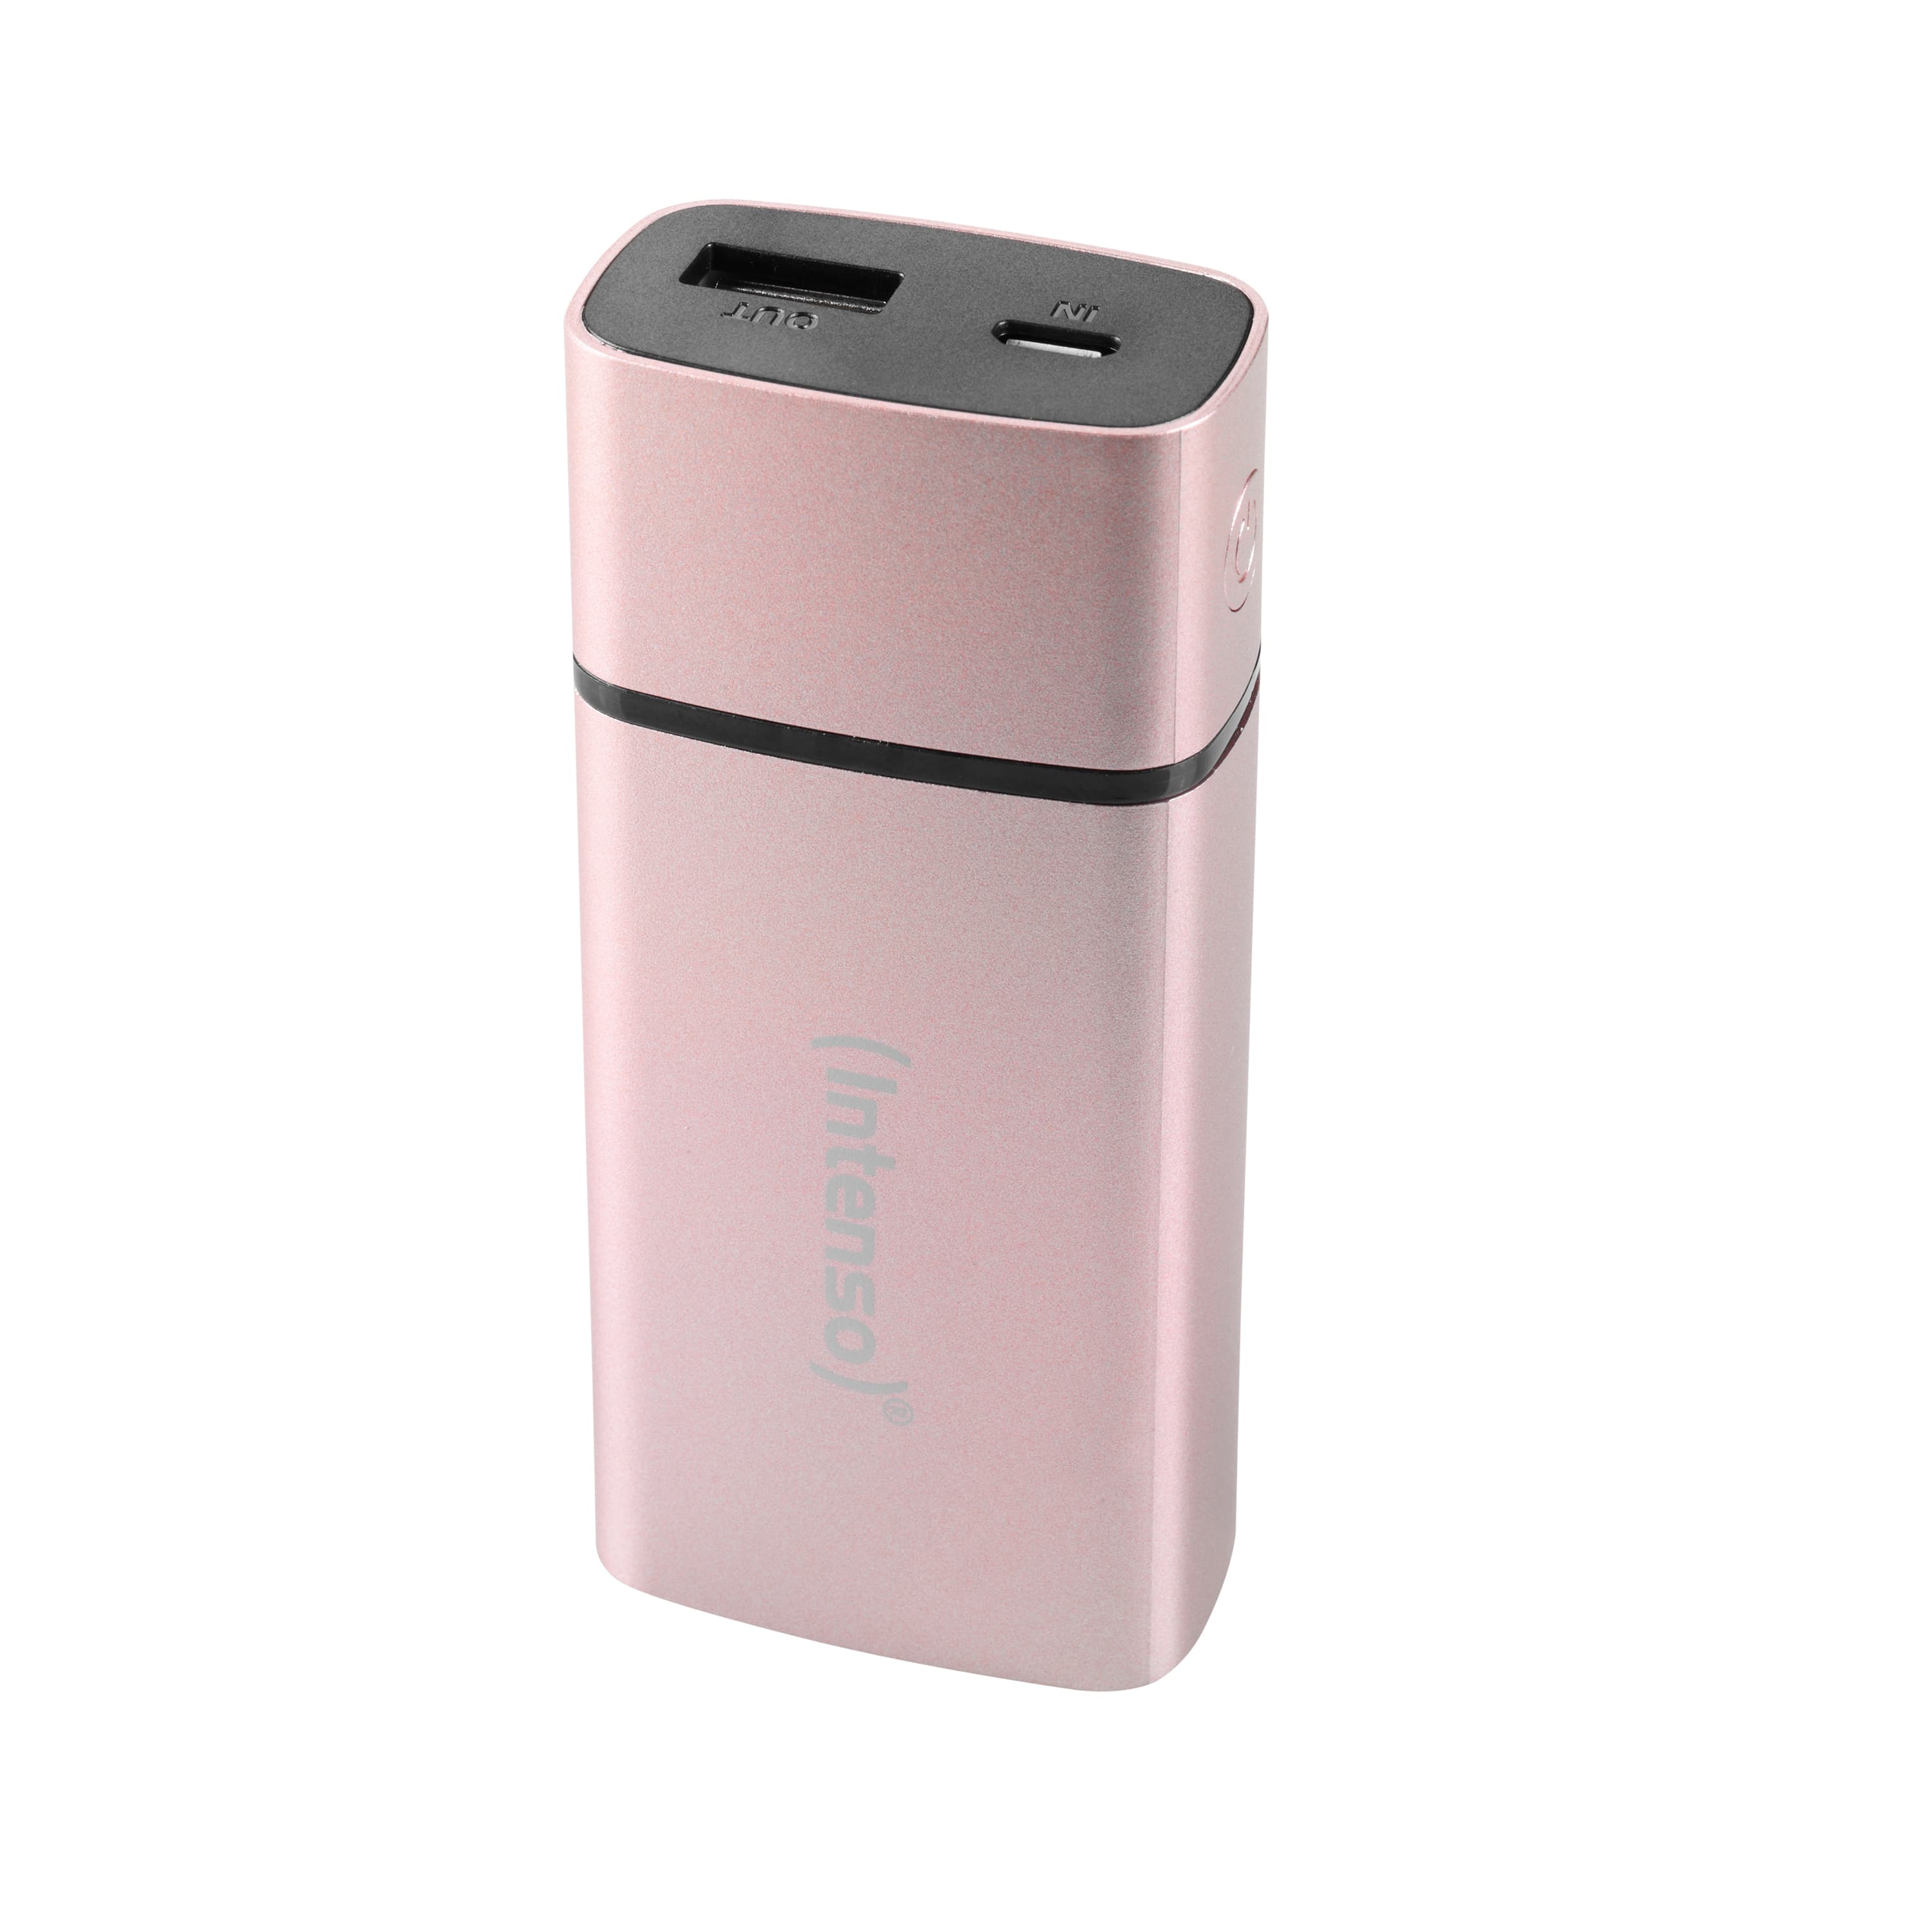 Intenso PM5200 - Pink - Universal - Lithium-Ion (Li-Ion) - 5200 mAh - USB - 5 V